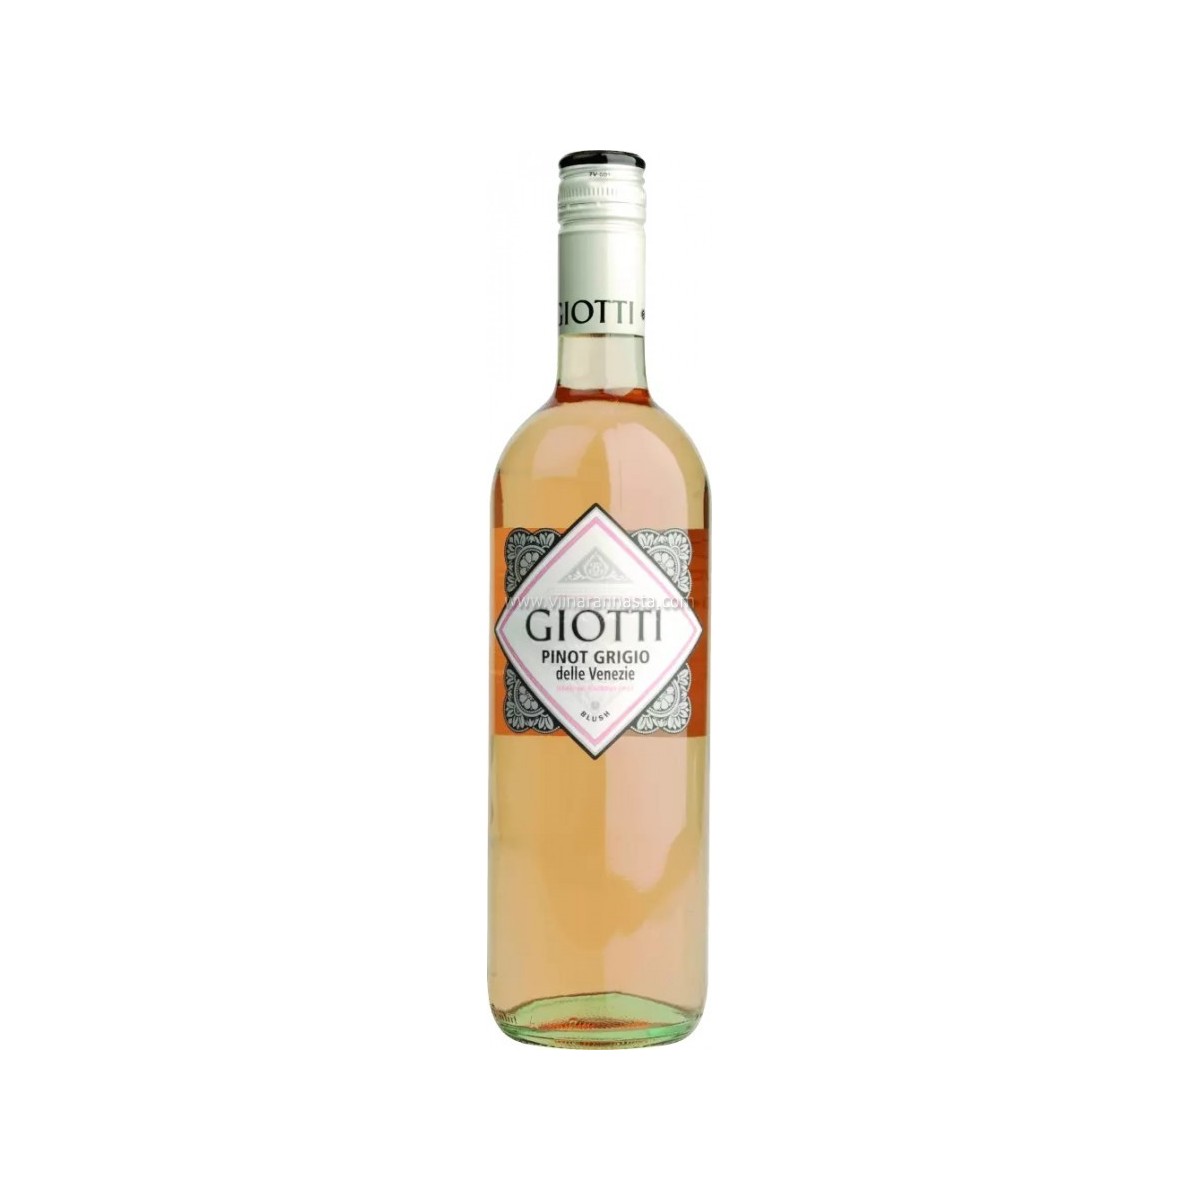 Giotti Pinot Grigio Blush 11,5% 75cl